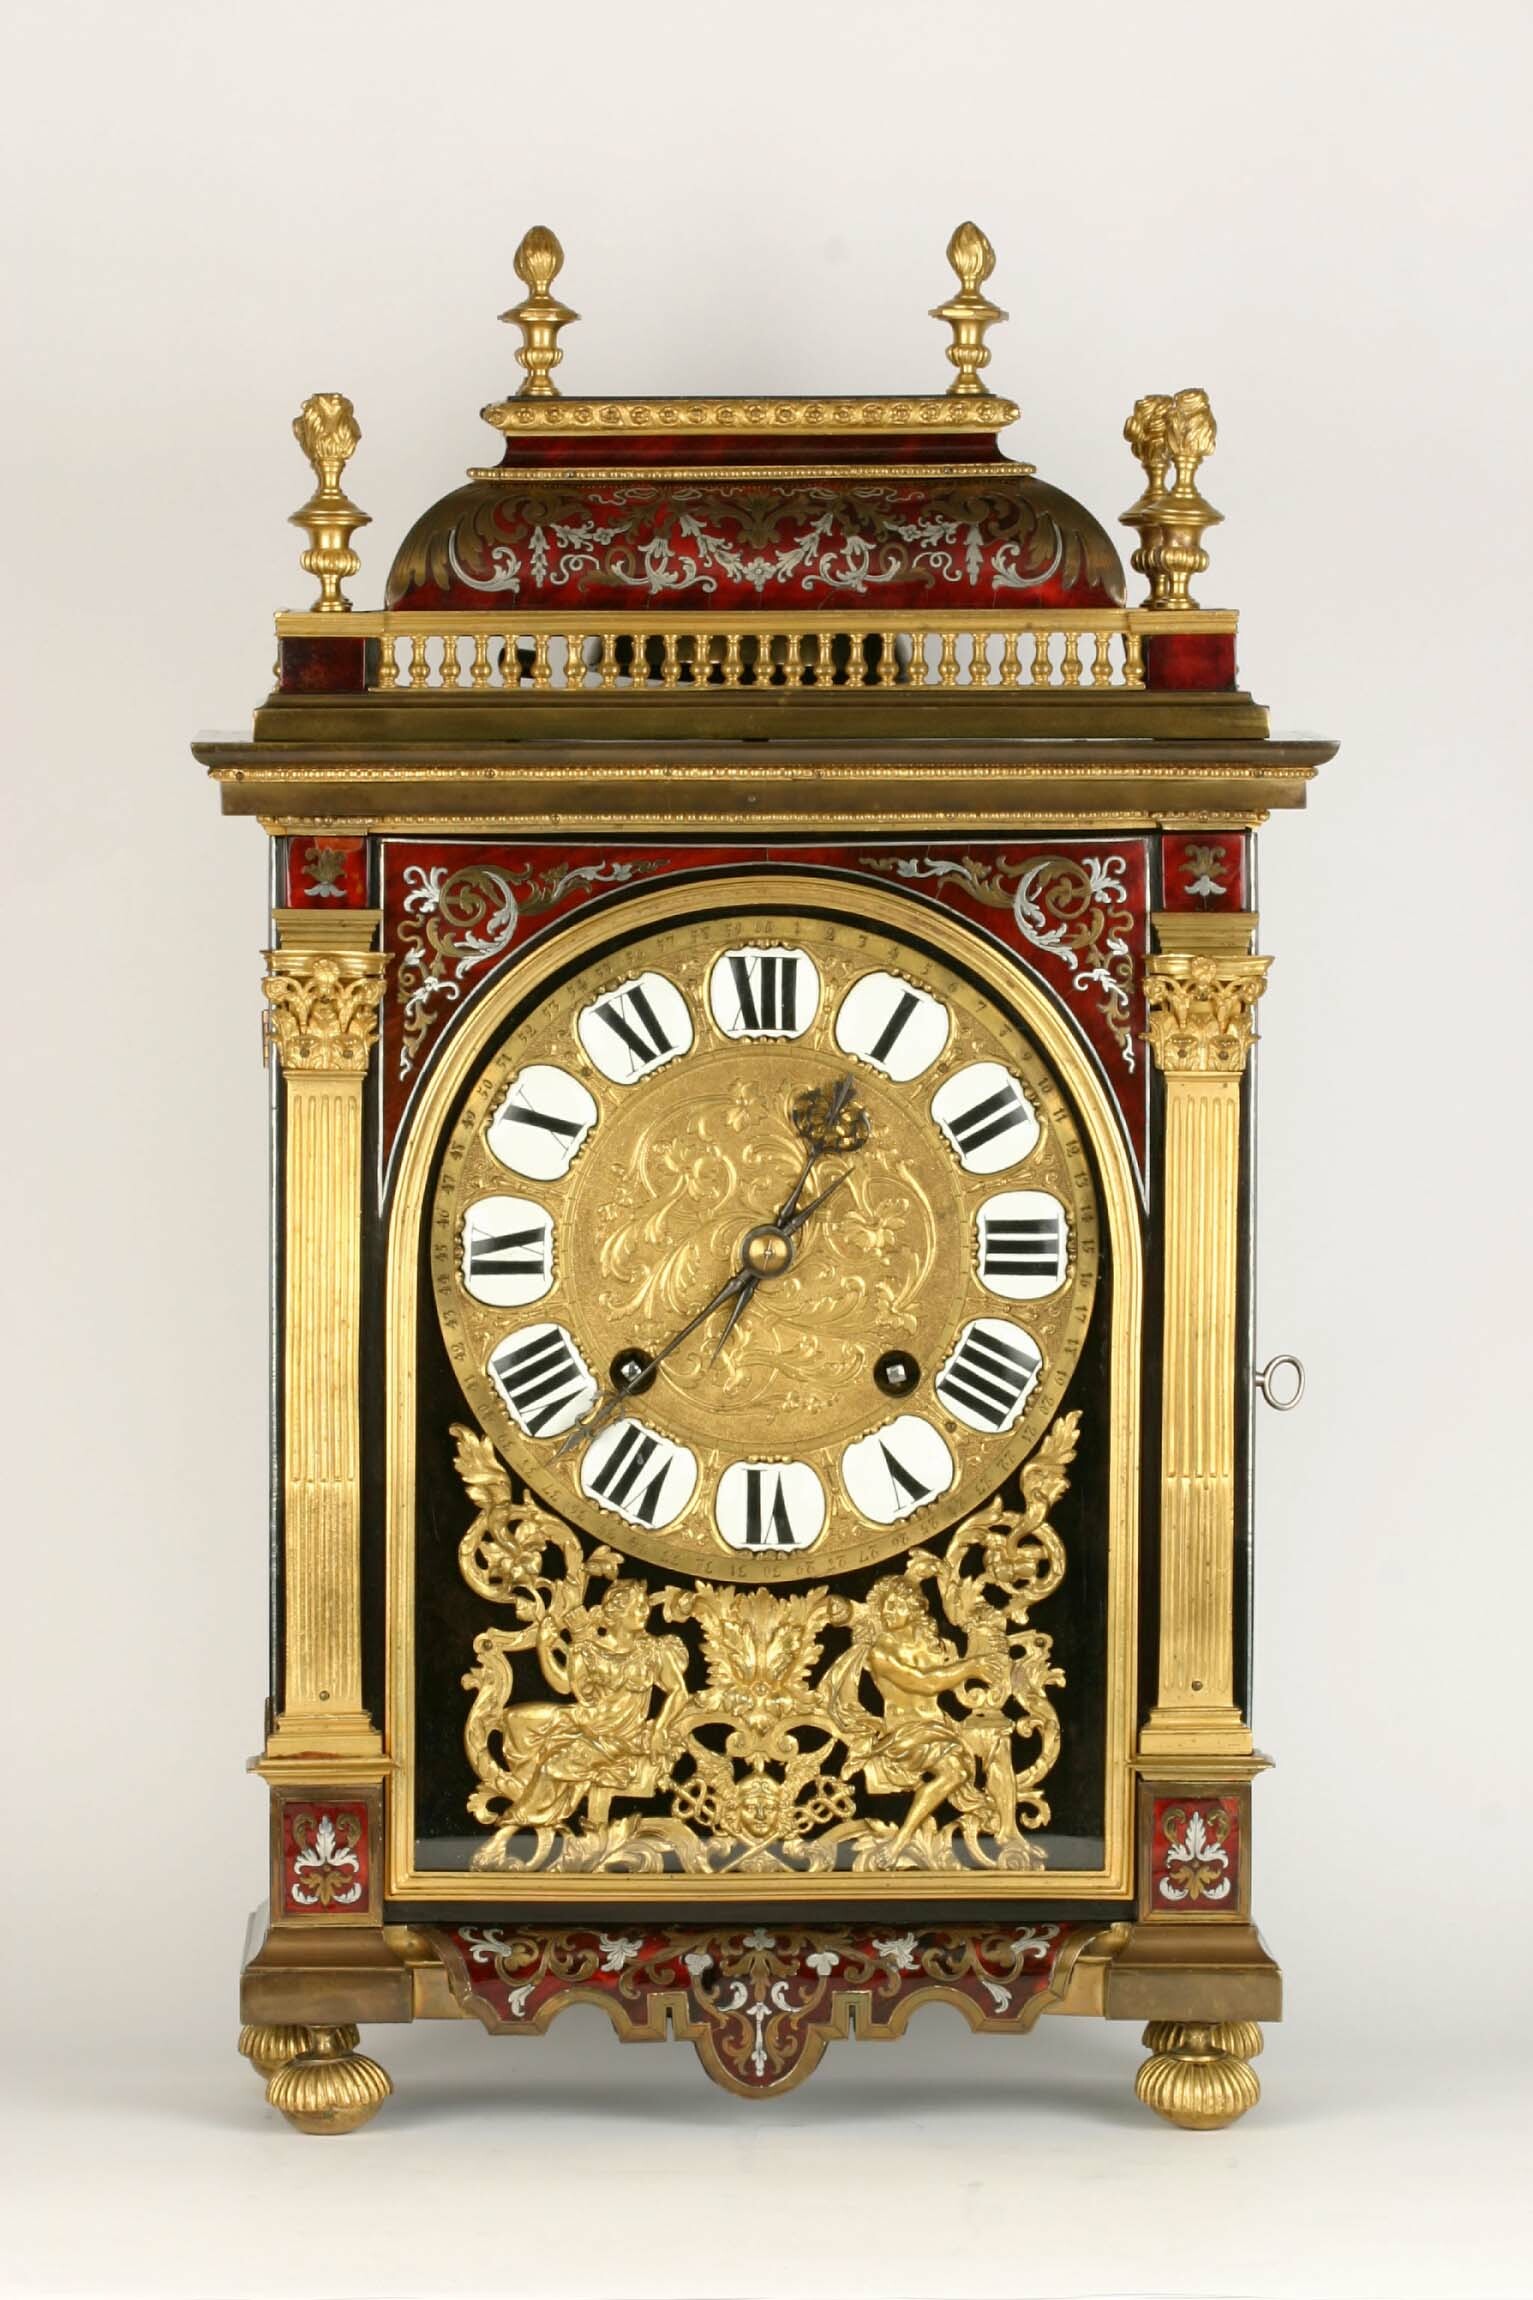 Tischuhr, Réligieuse, Gilles Martinot, Paris, Ende 17. Jahrhundert (Deutsches Uhrenmuseum CC BY-SA)